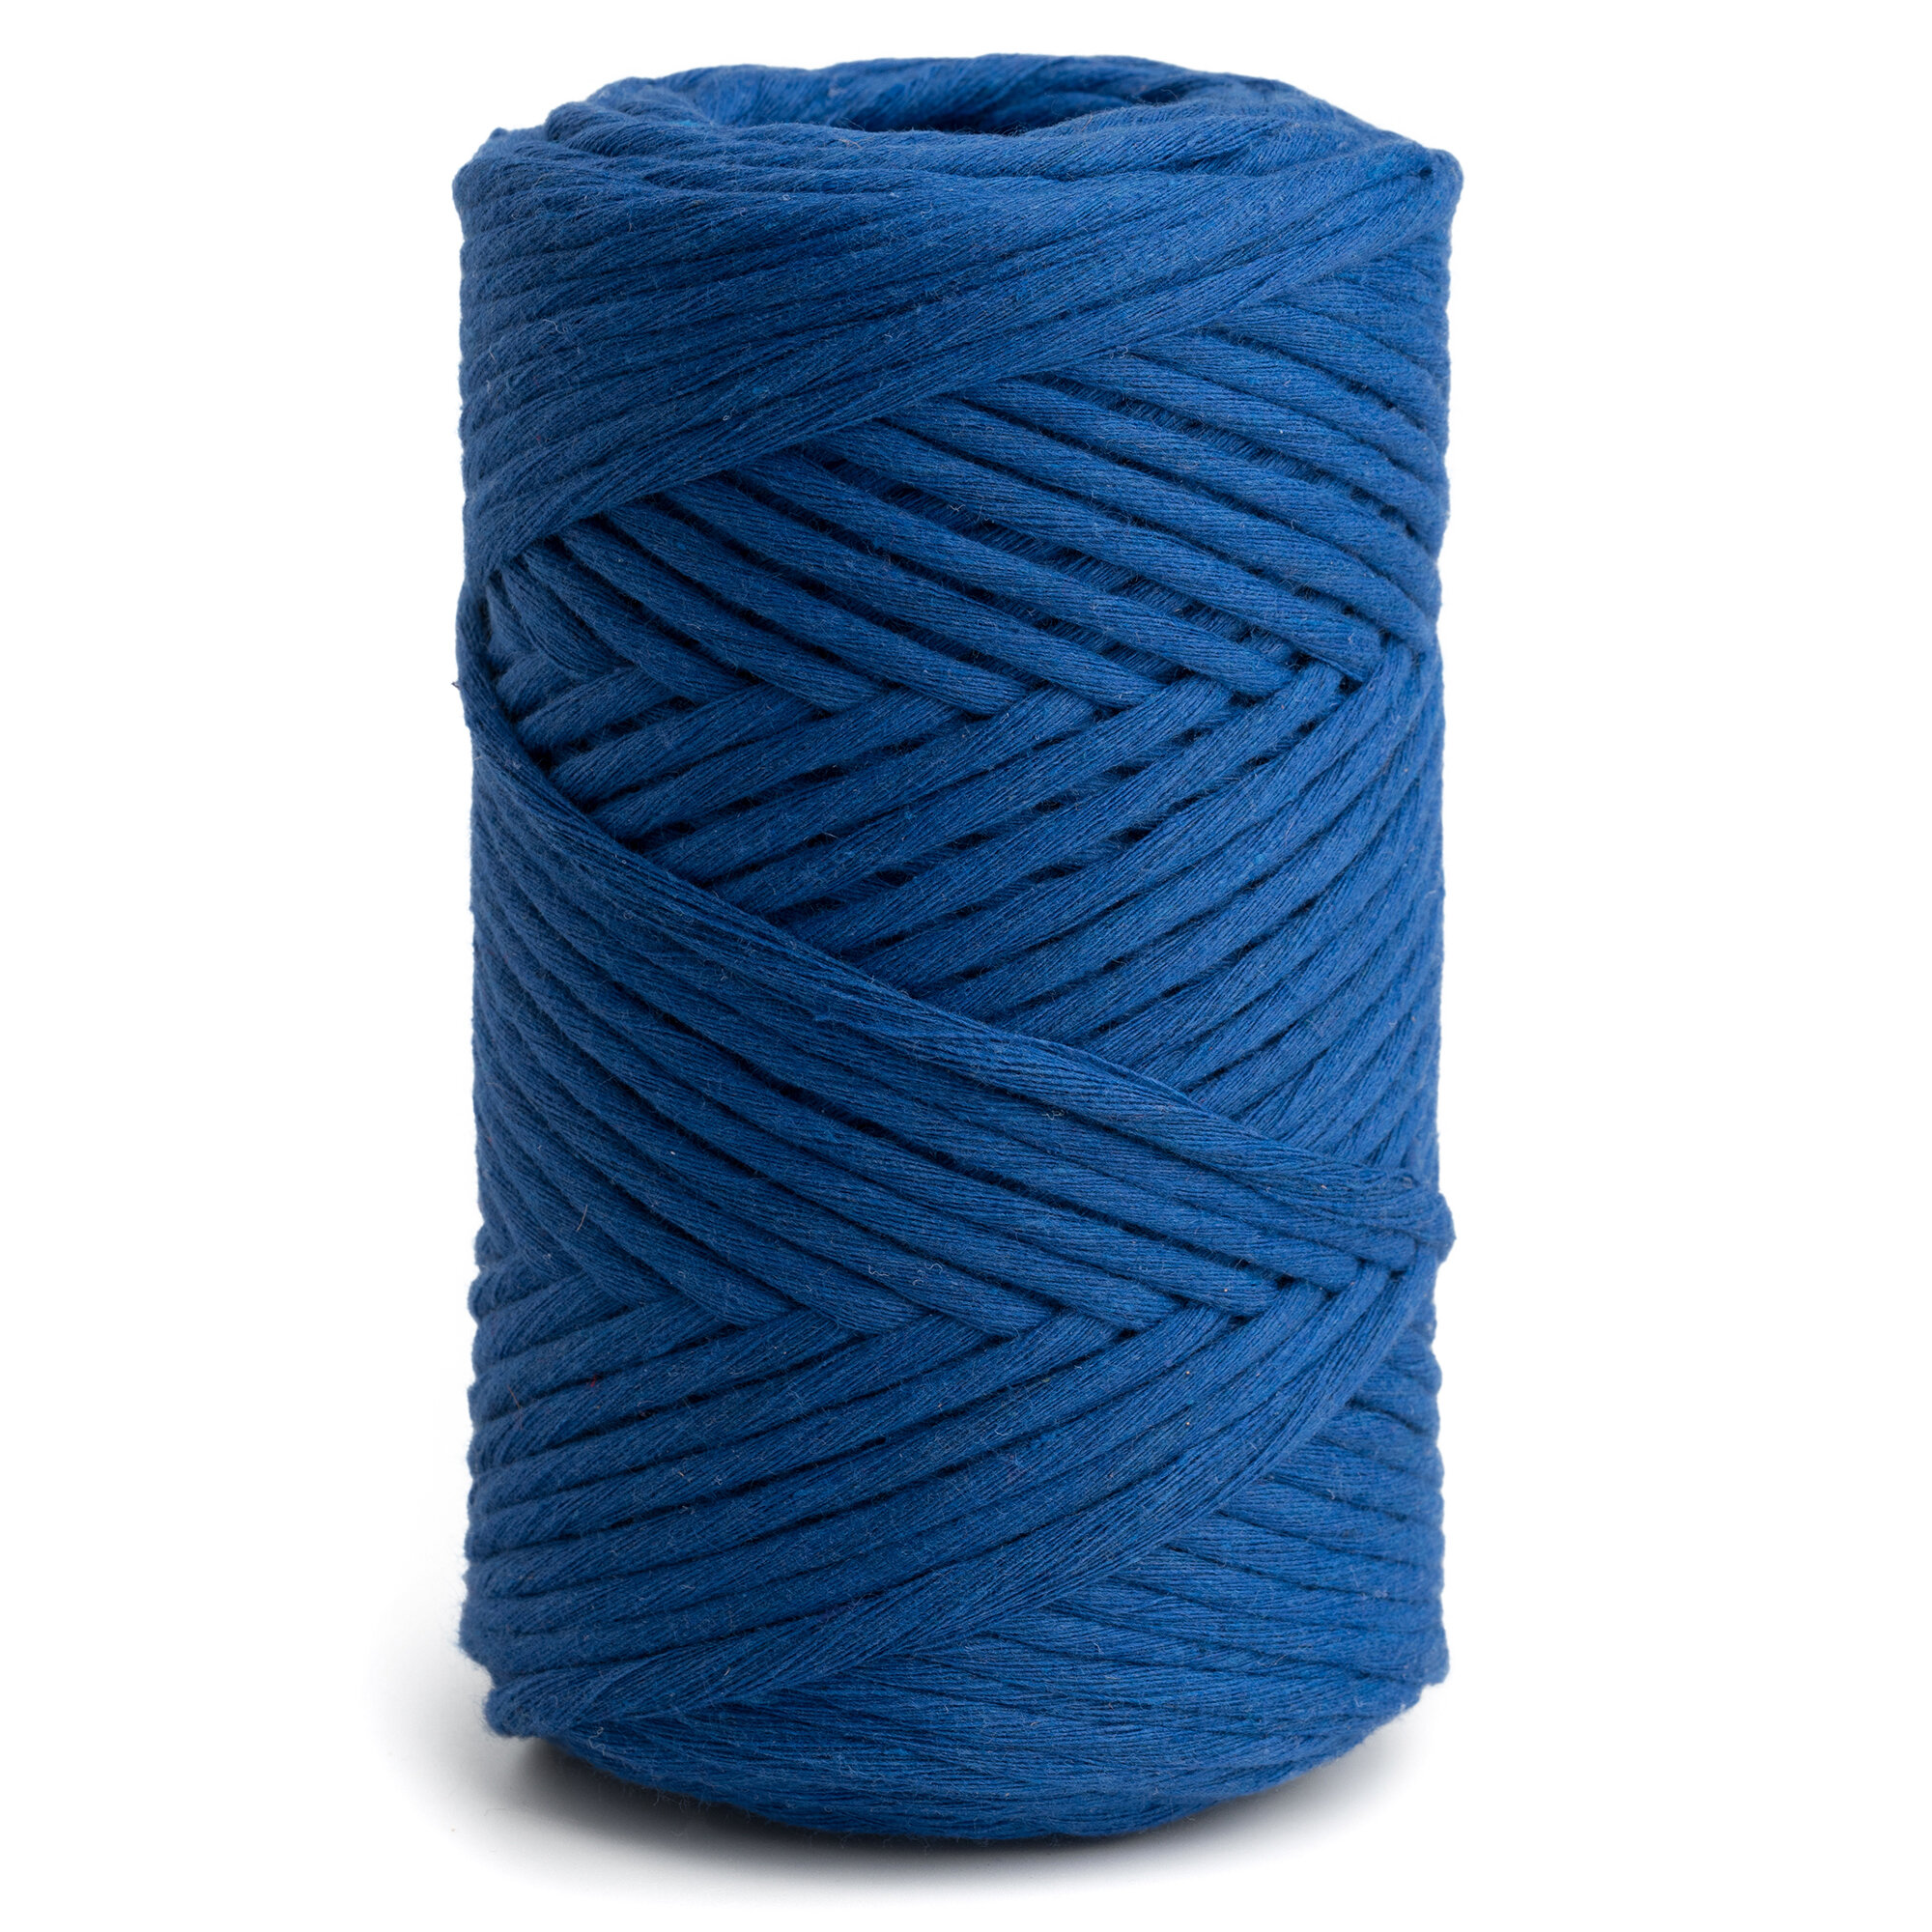 Шпагат хлопковый синий 4 мм 150 м для макраме, вязания, рукоделия